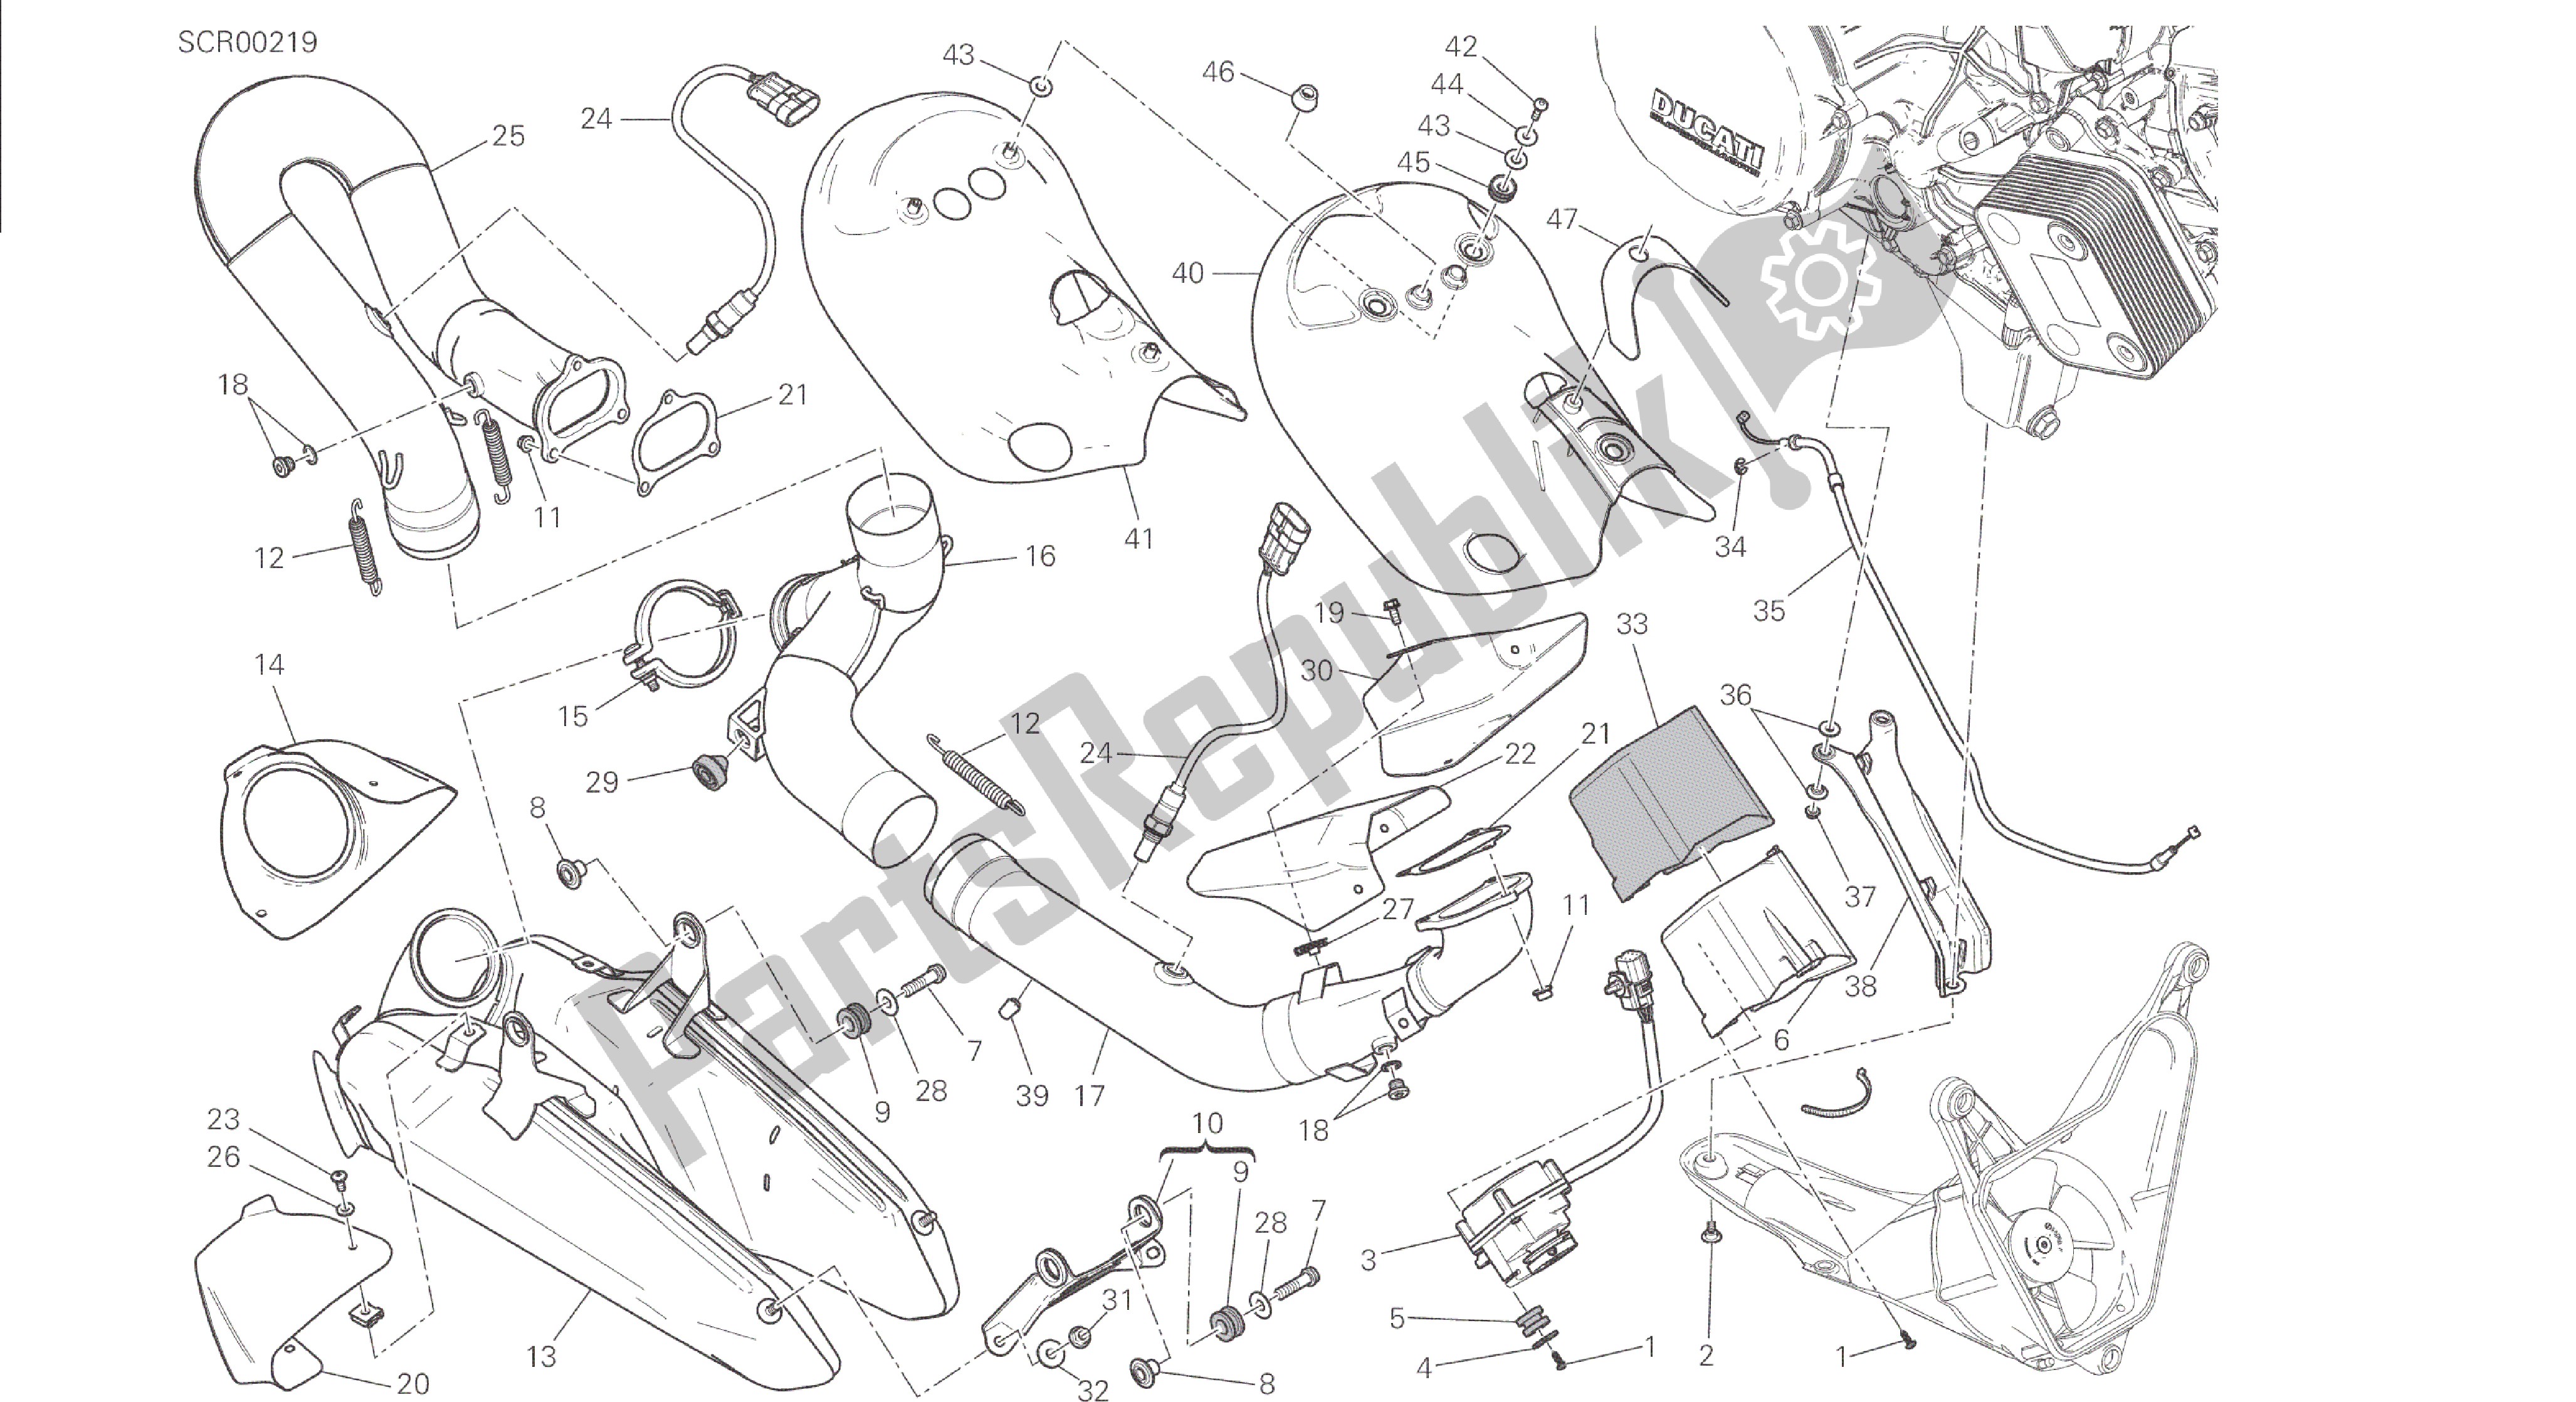 Todas las partes para Dibujo 019 - Gruppo Scarico [mod: 1299; Xst: Aus, Eur, Fra] Marco De Grupo de Ducati Panigale 1299 2015